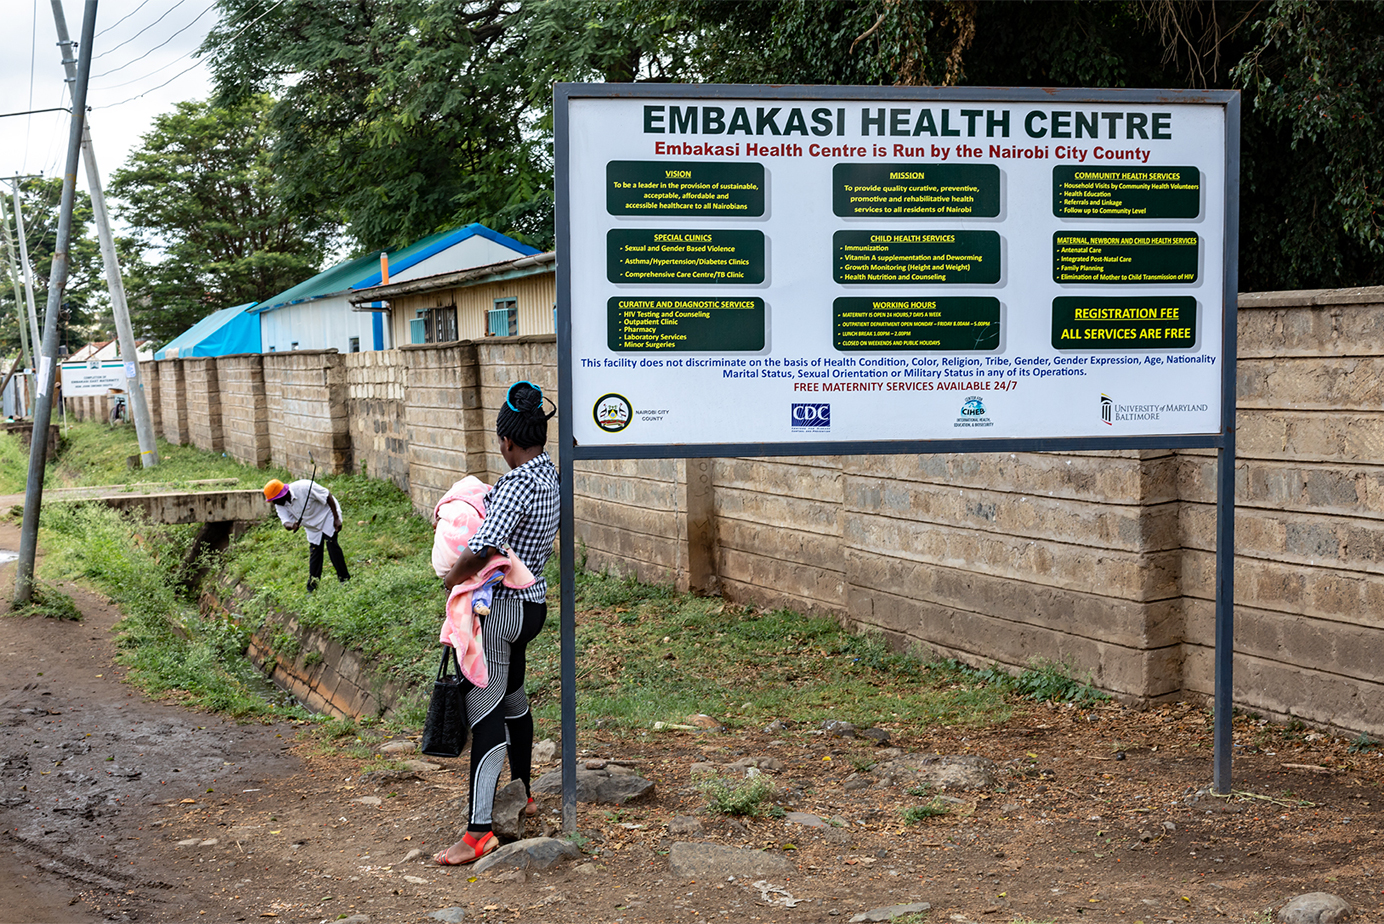 在全球基金的援助下,肯尼亚建立了包括 embakasi 医疗中心在内的多个